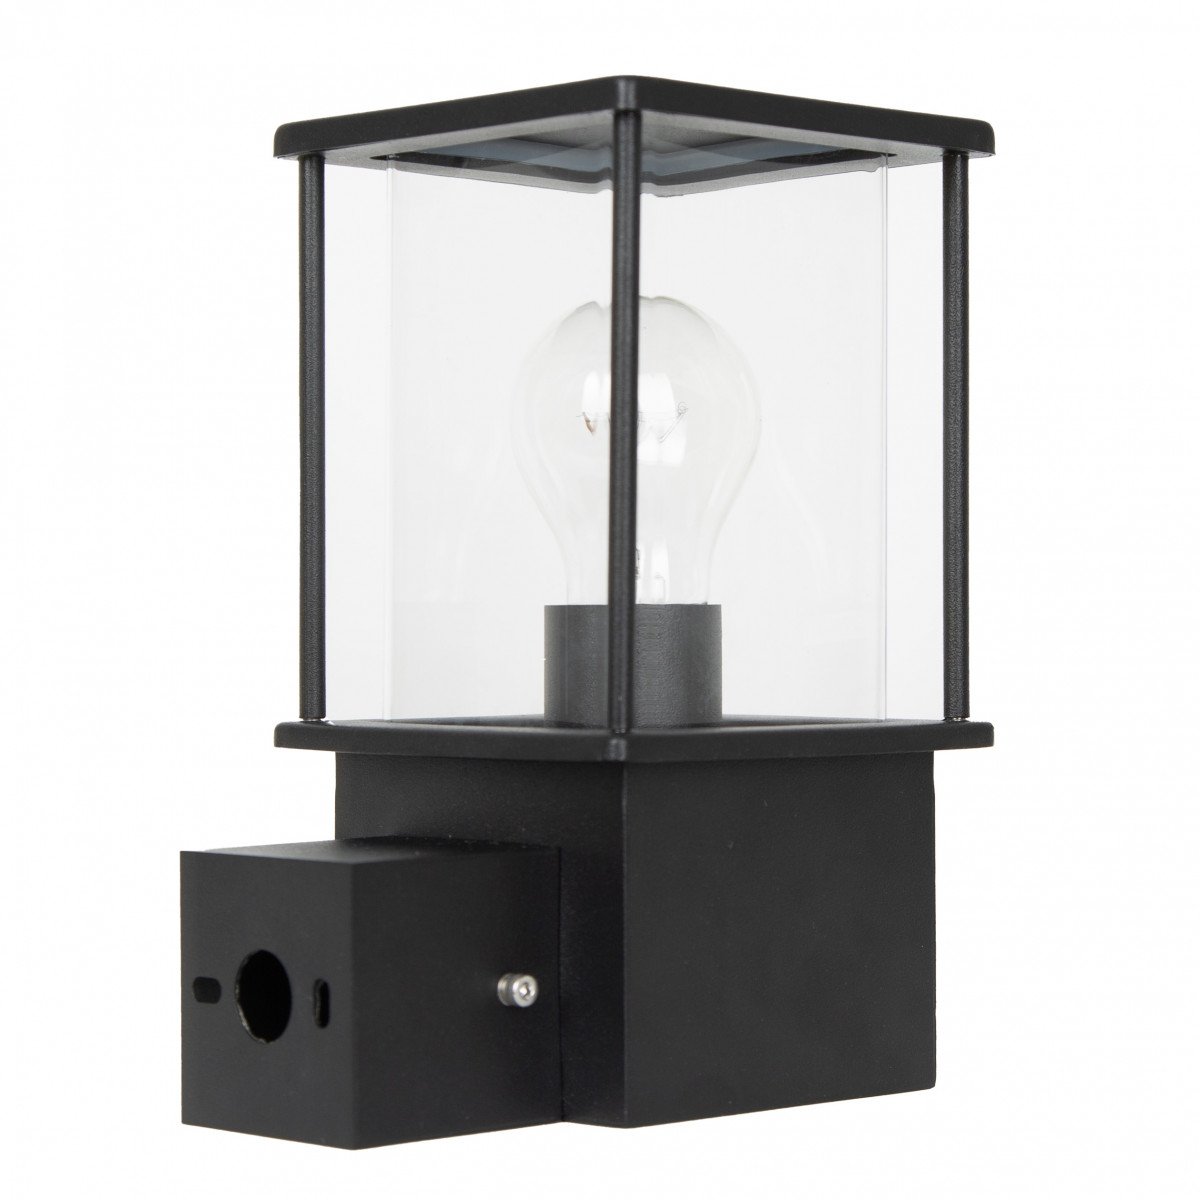 Commandez l'applique d'extérieur Astro 7527, une lampe moderne, avec finition stylée en noir et maintenant une ampoule LED gratuite. 